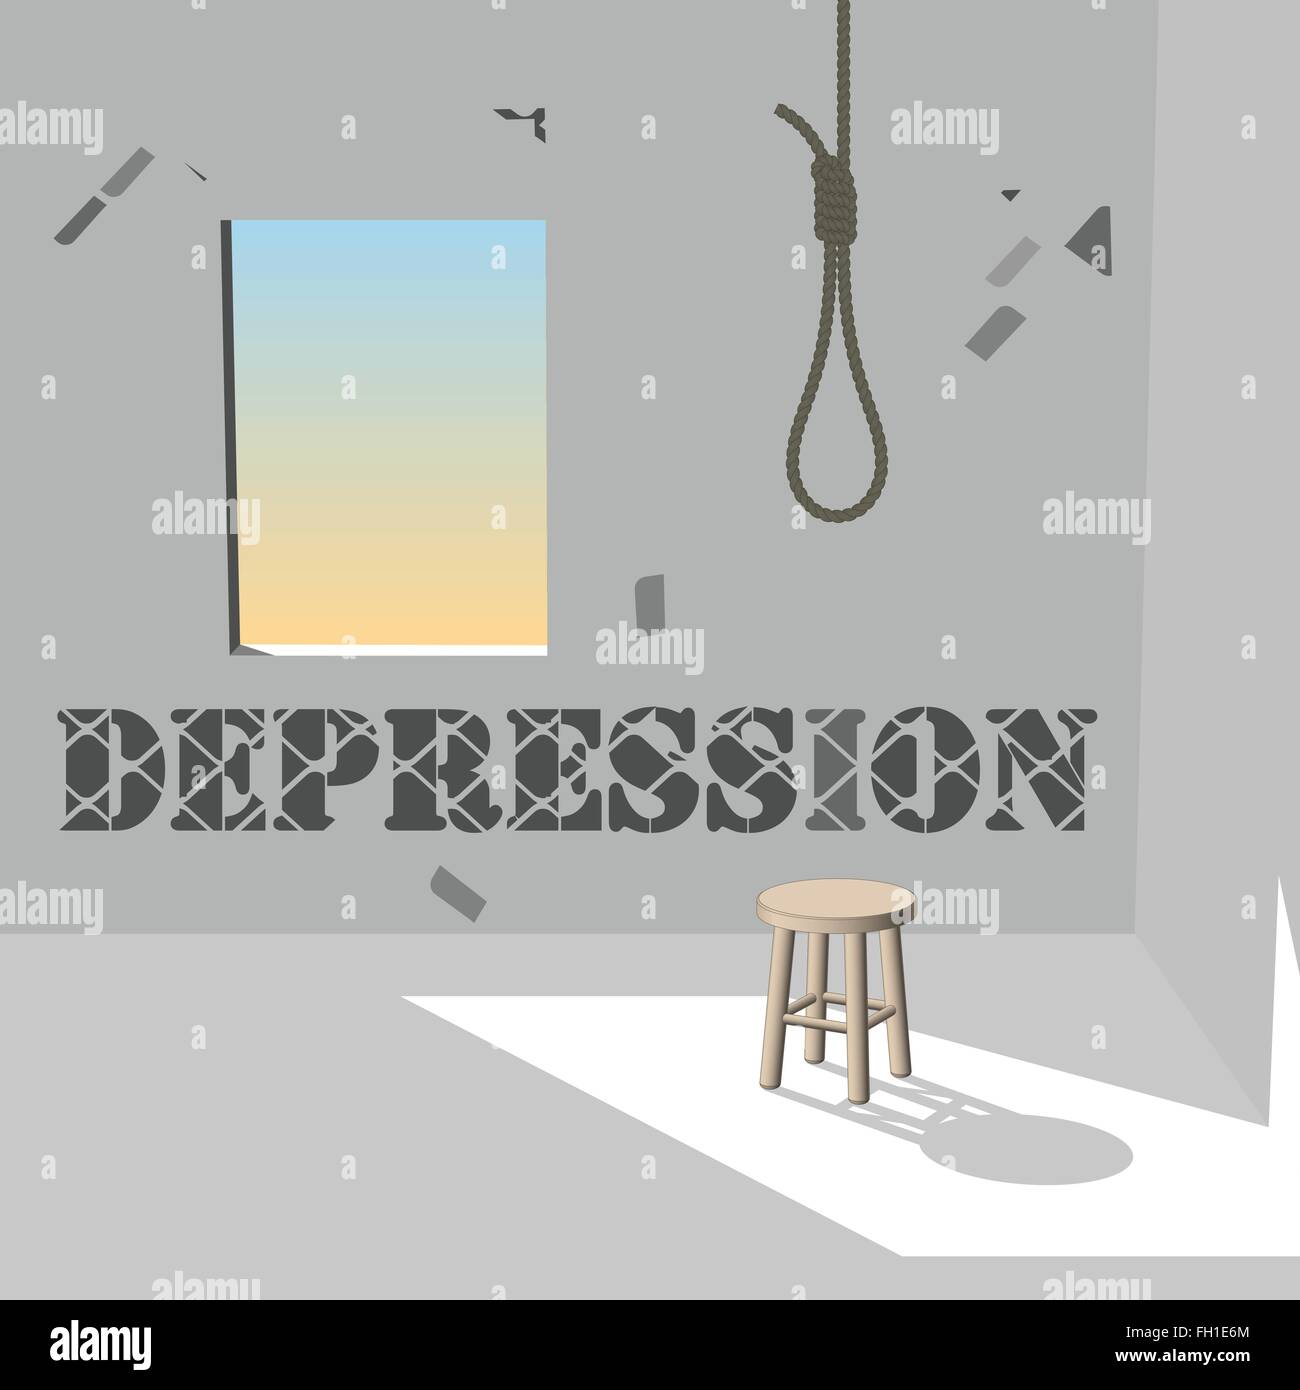 Depressionen im dunklen Raum Stock Vektor